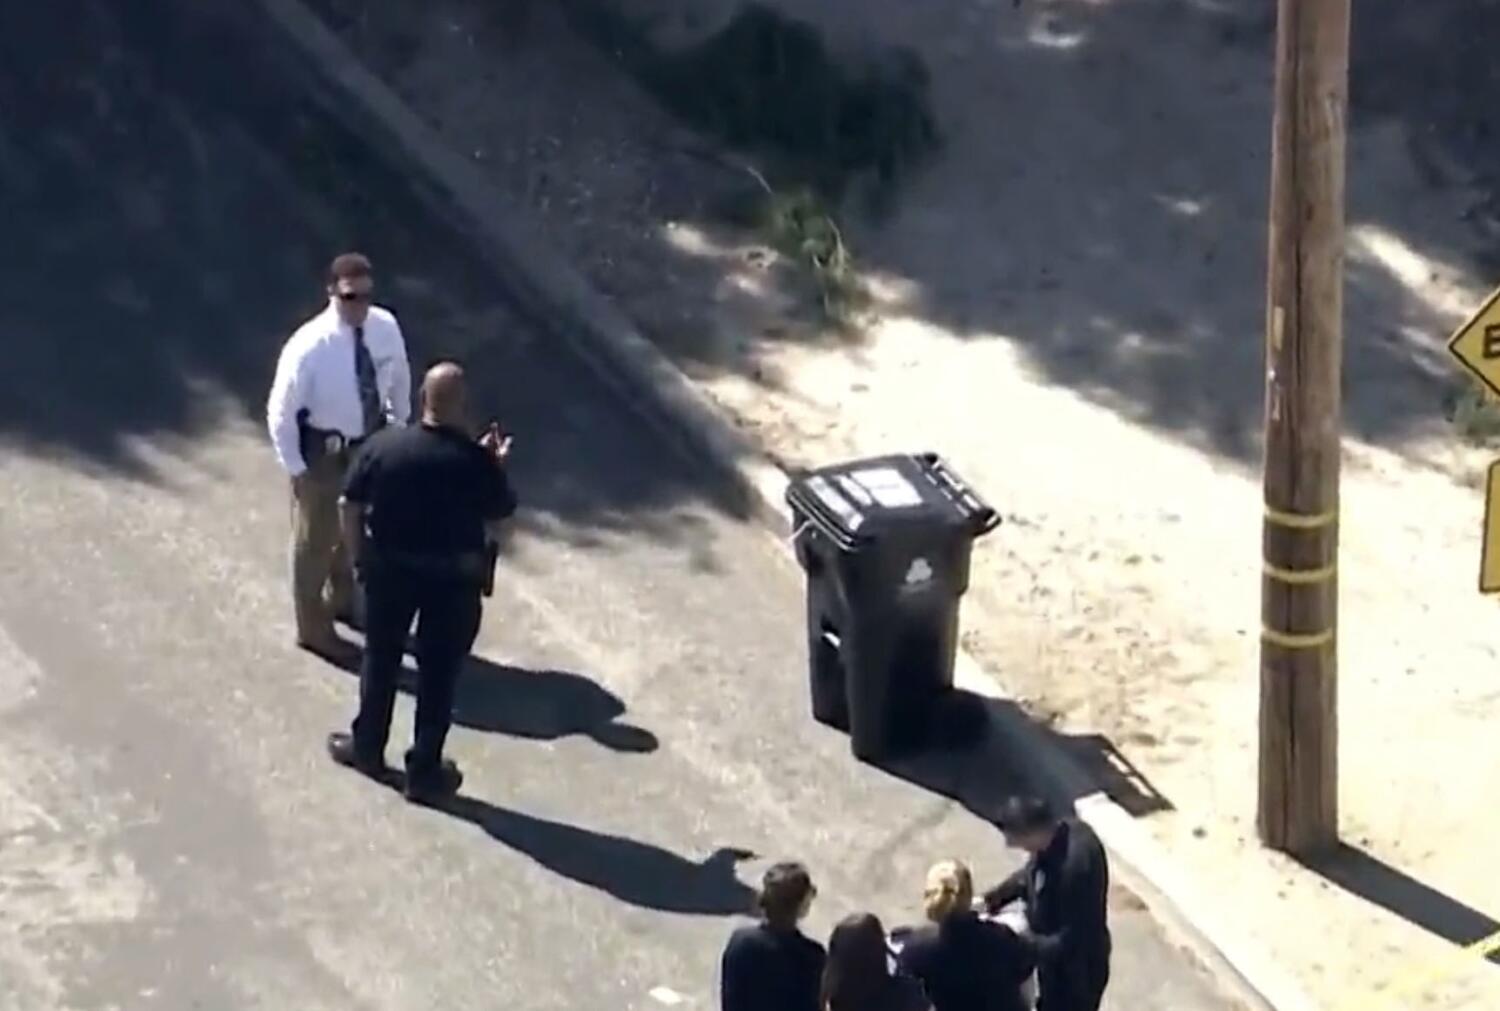 Woman found dead inside Sunland trash bin identified